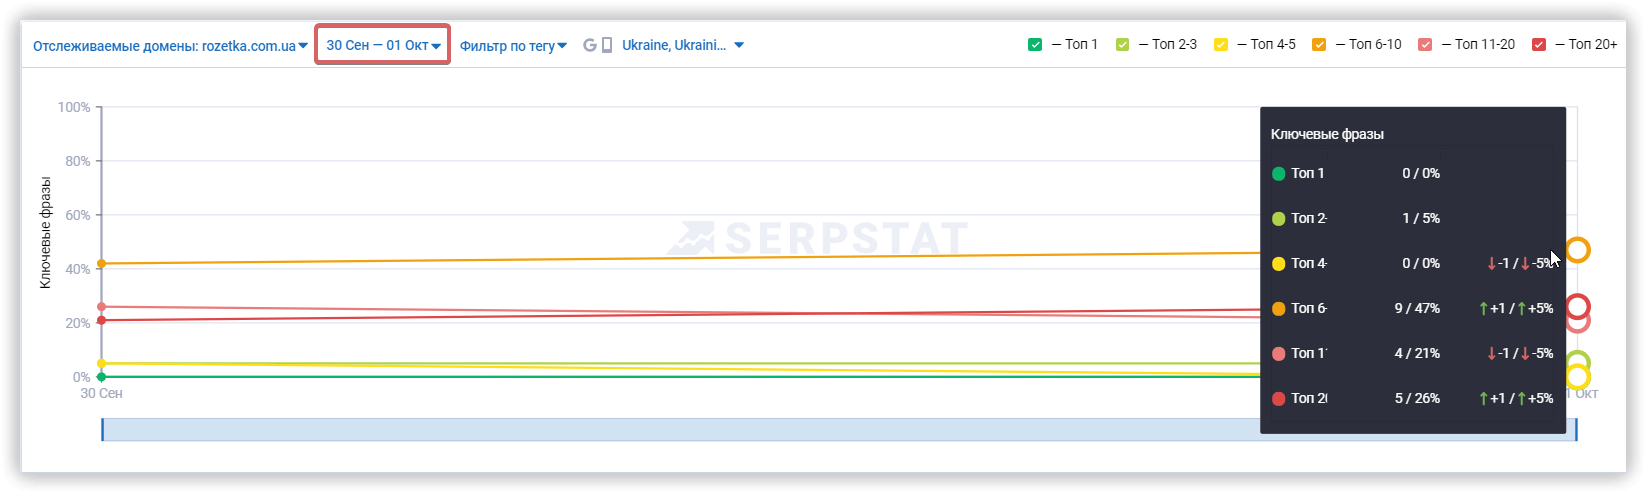 Выбор периода для графика распределения позиций в мониторинге Serpstat